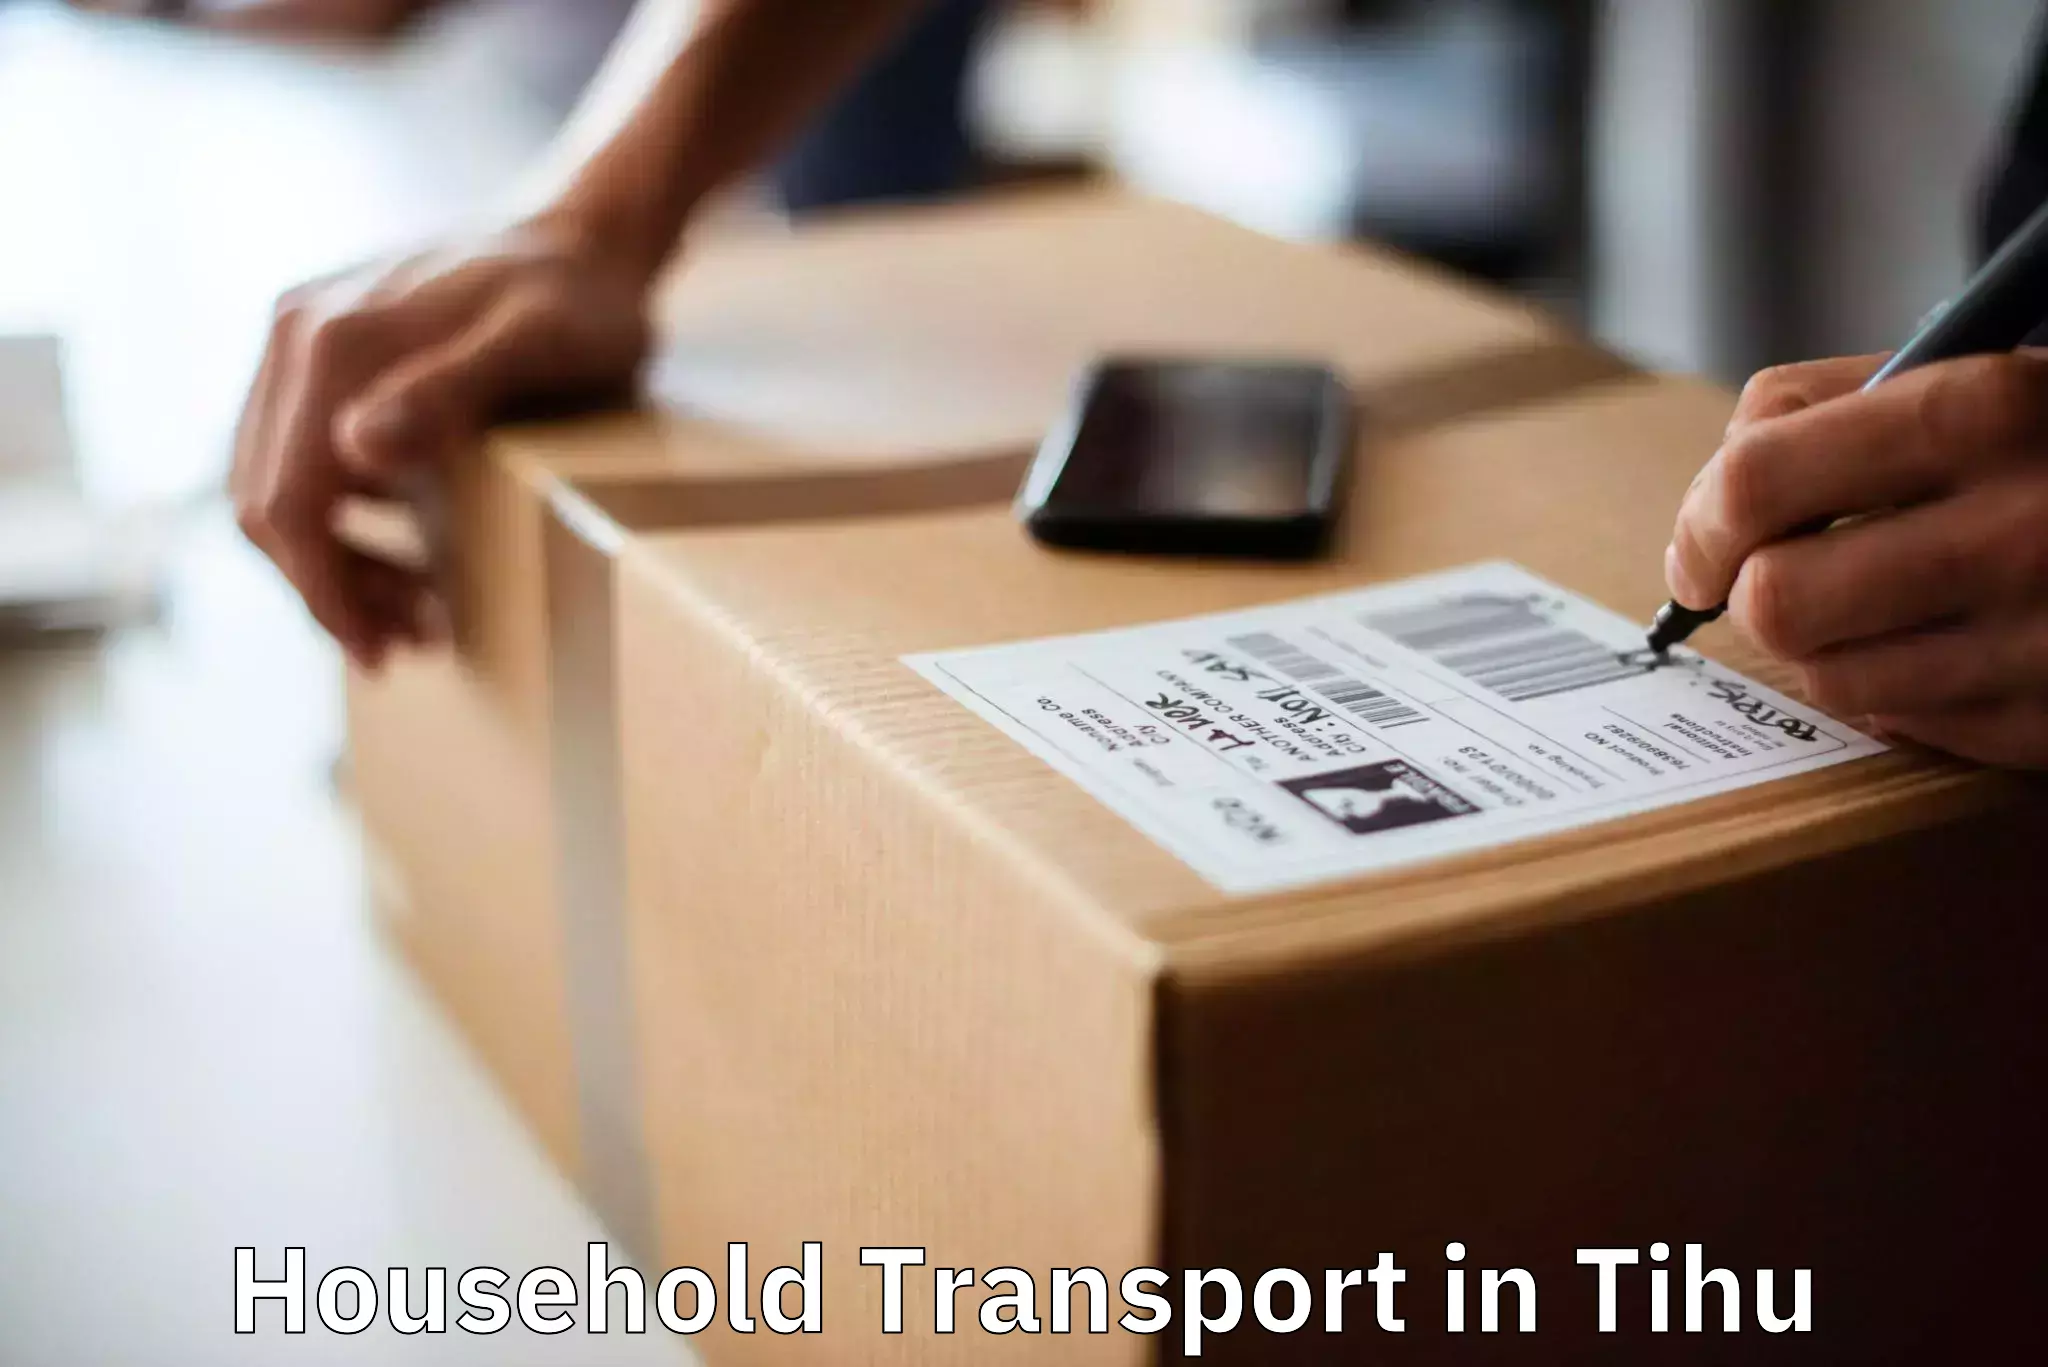 Furniture transport services in Tihu